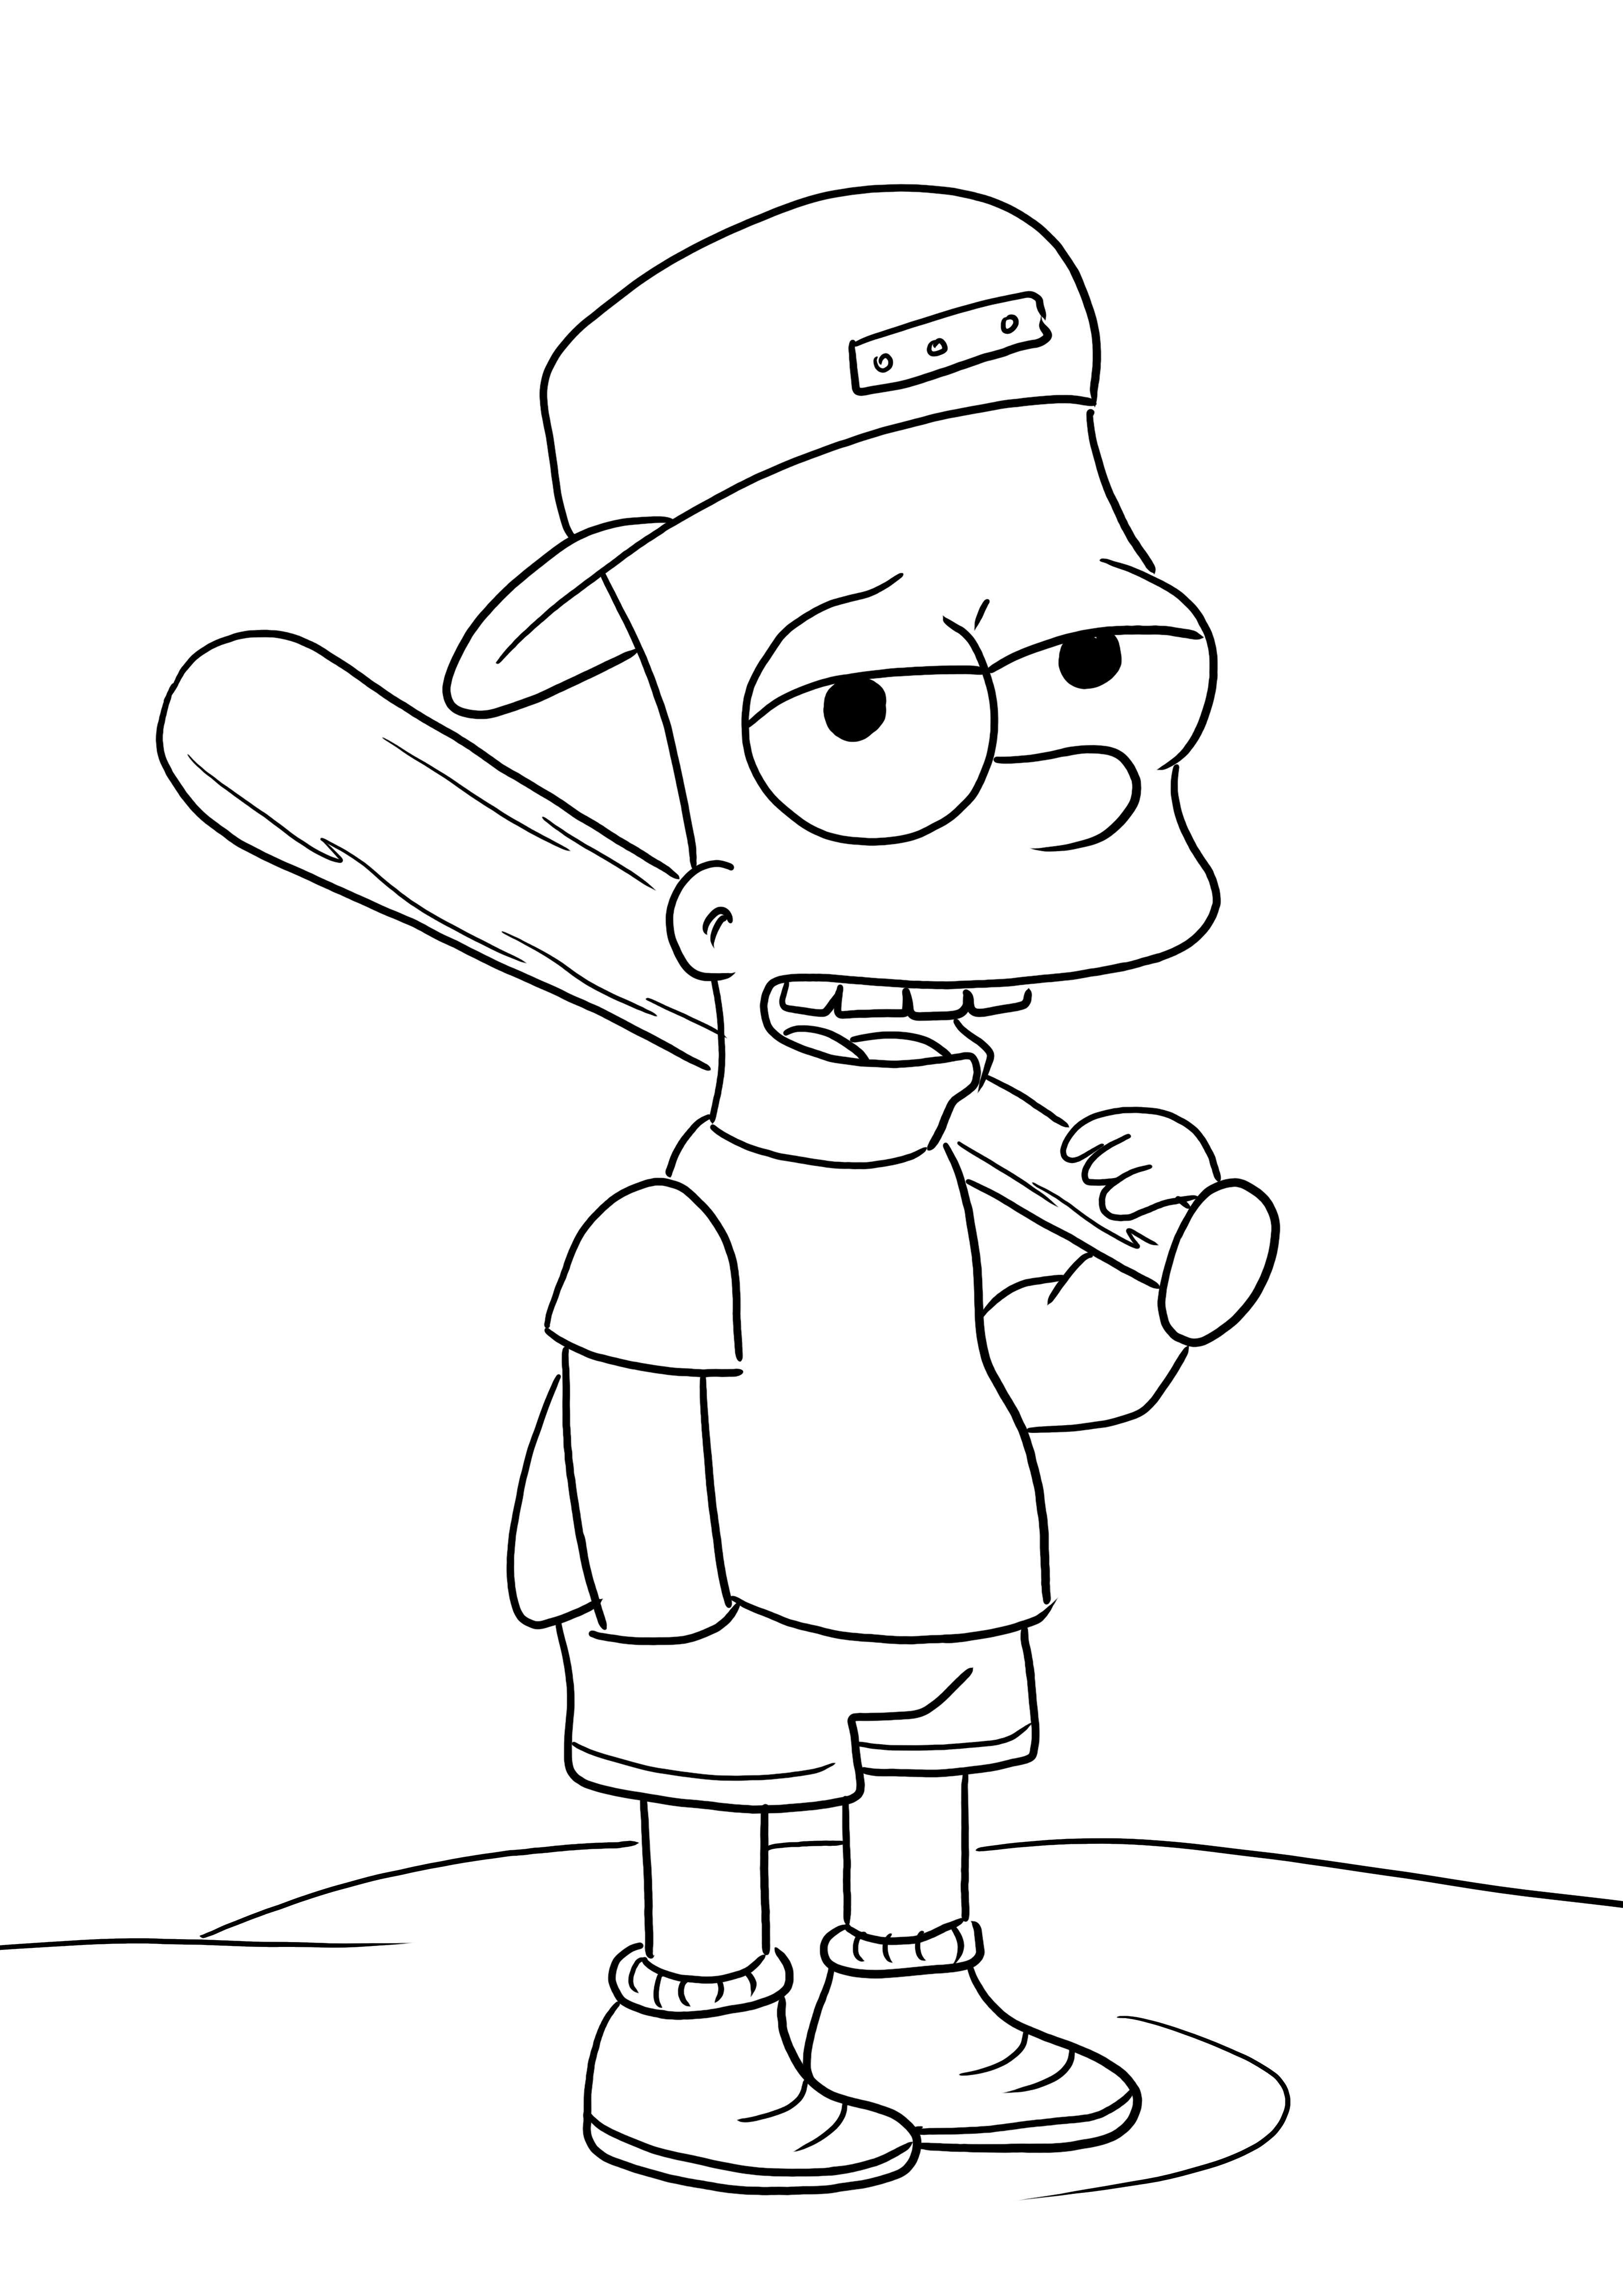 Bart Simpsons e seu bastão de beisebol impresso e sem cor